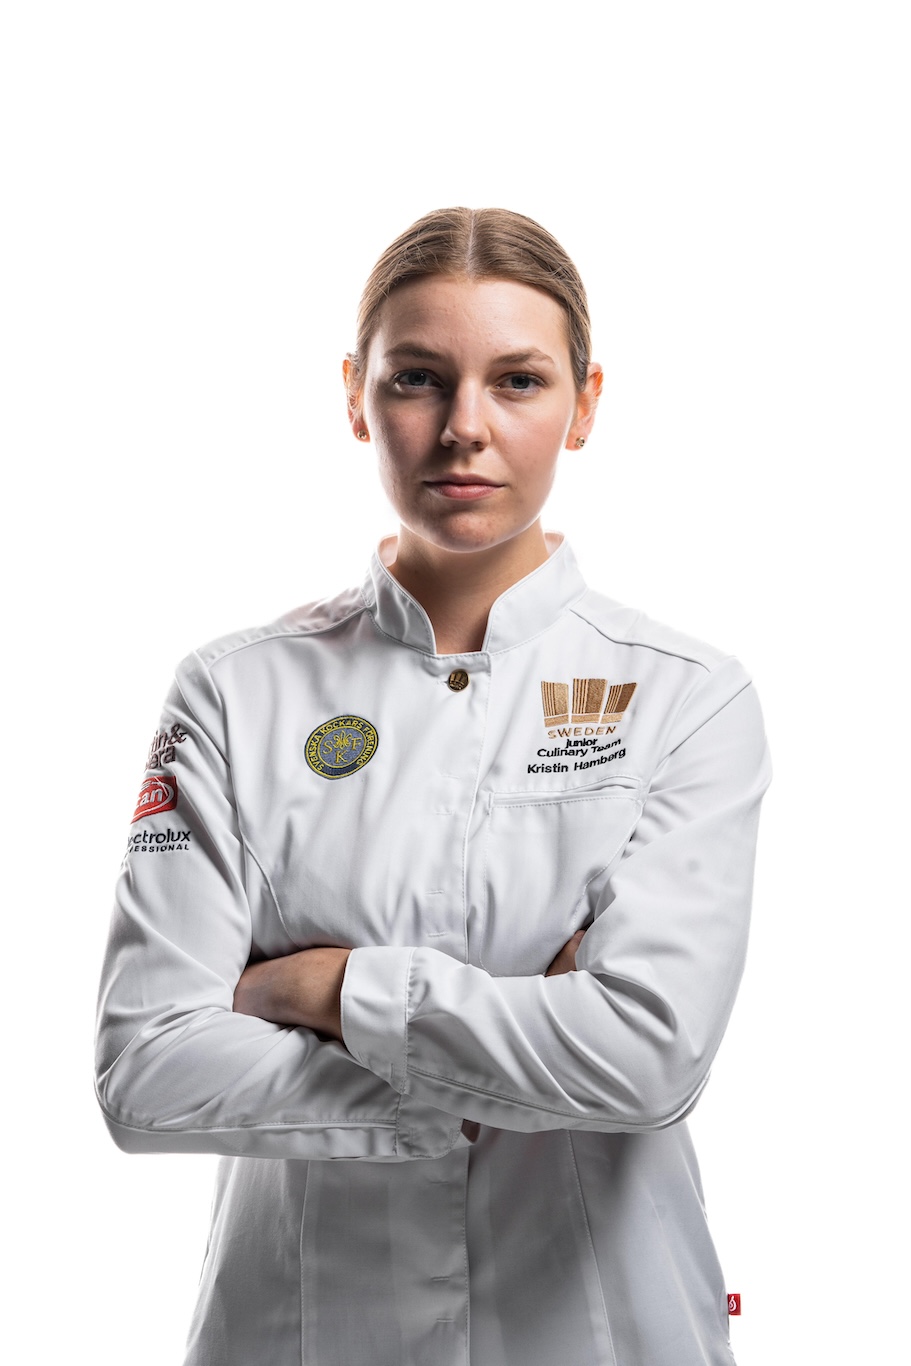 Kristin Hambergs reise fra amatørbaker til kulinarisk OL-gullvinner 4